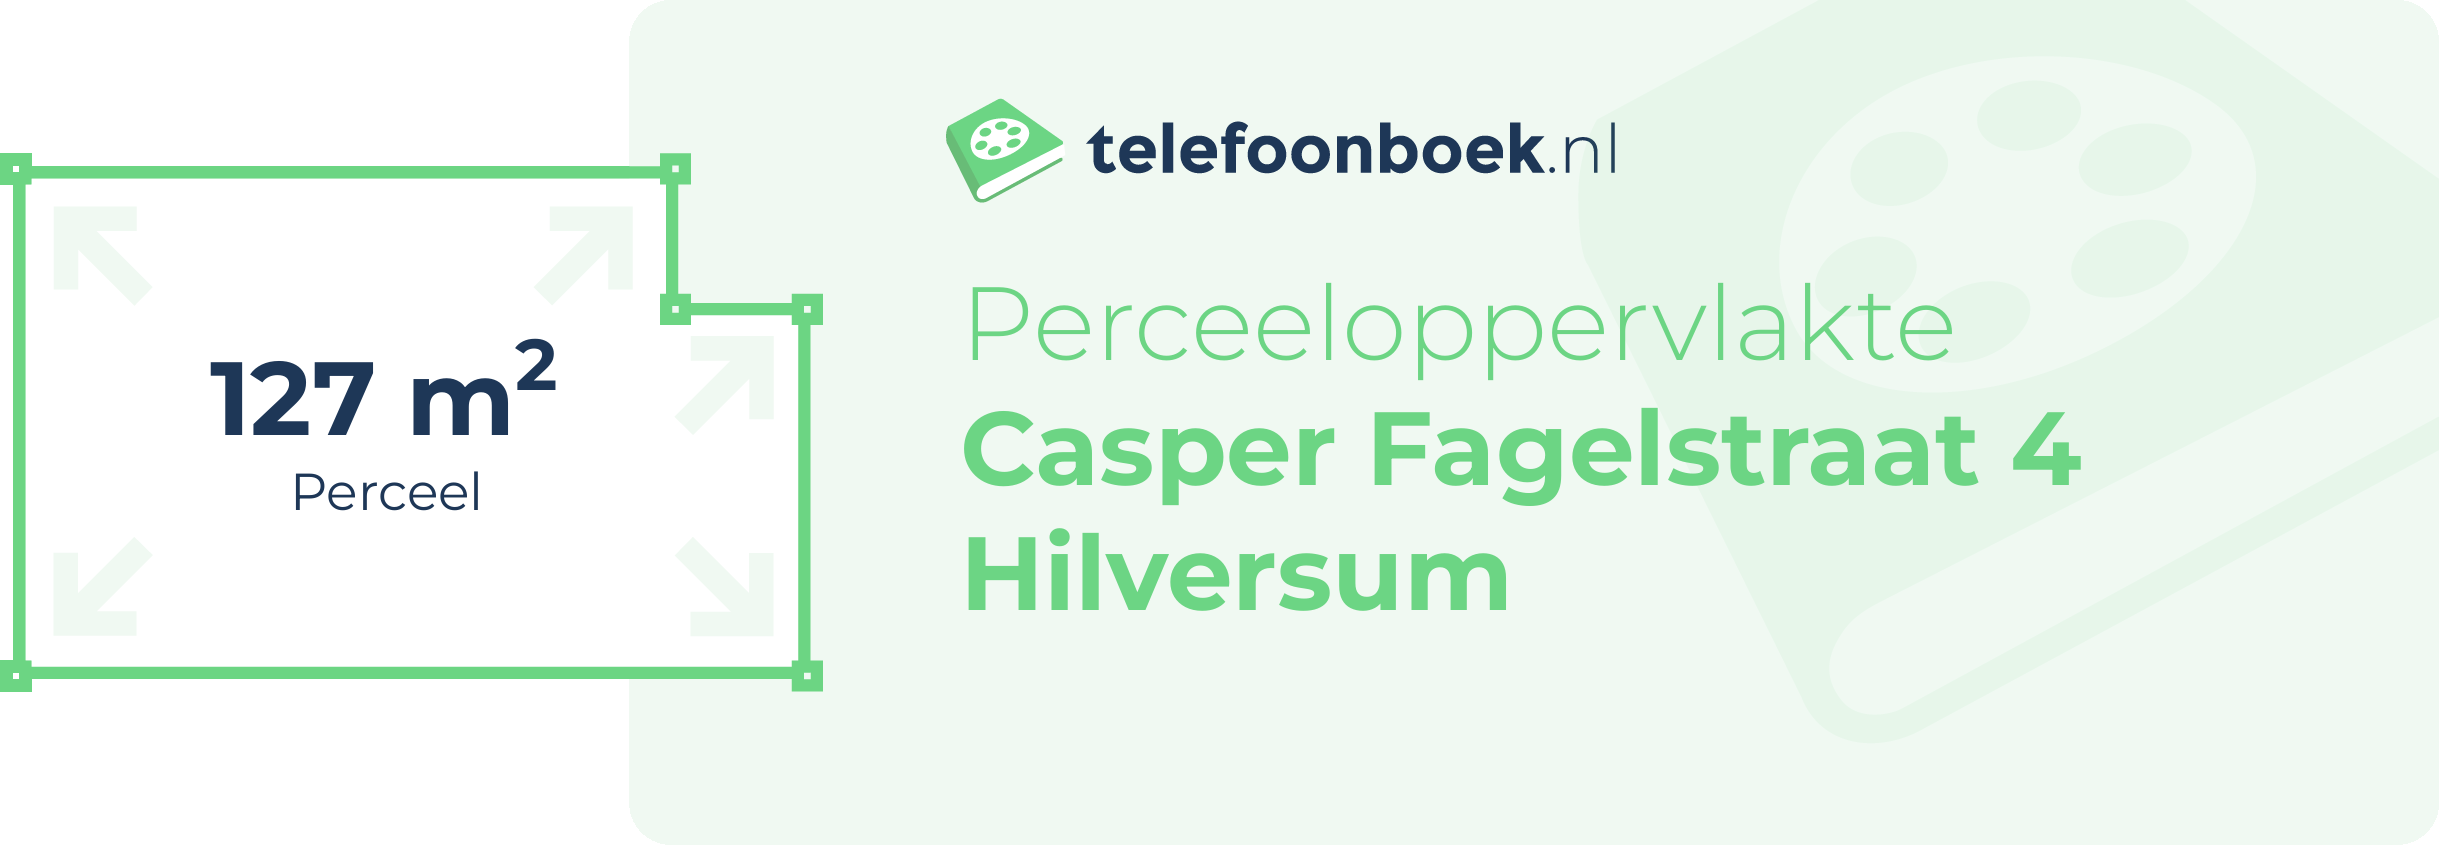 Perceeloppervlakte Casper Fagelstraat 4 Hilversum